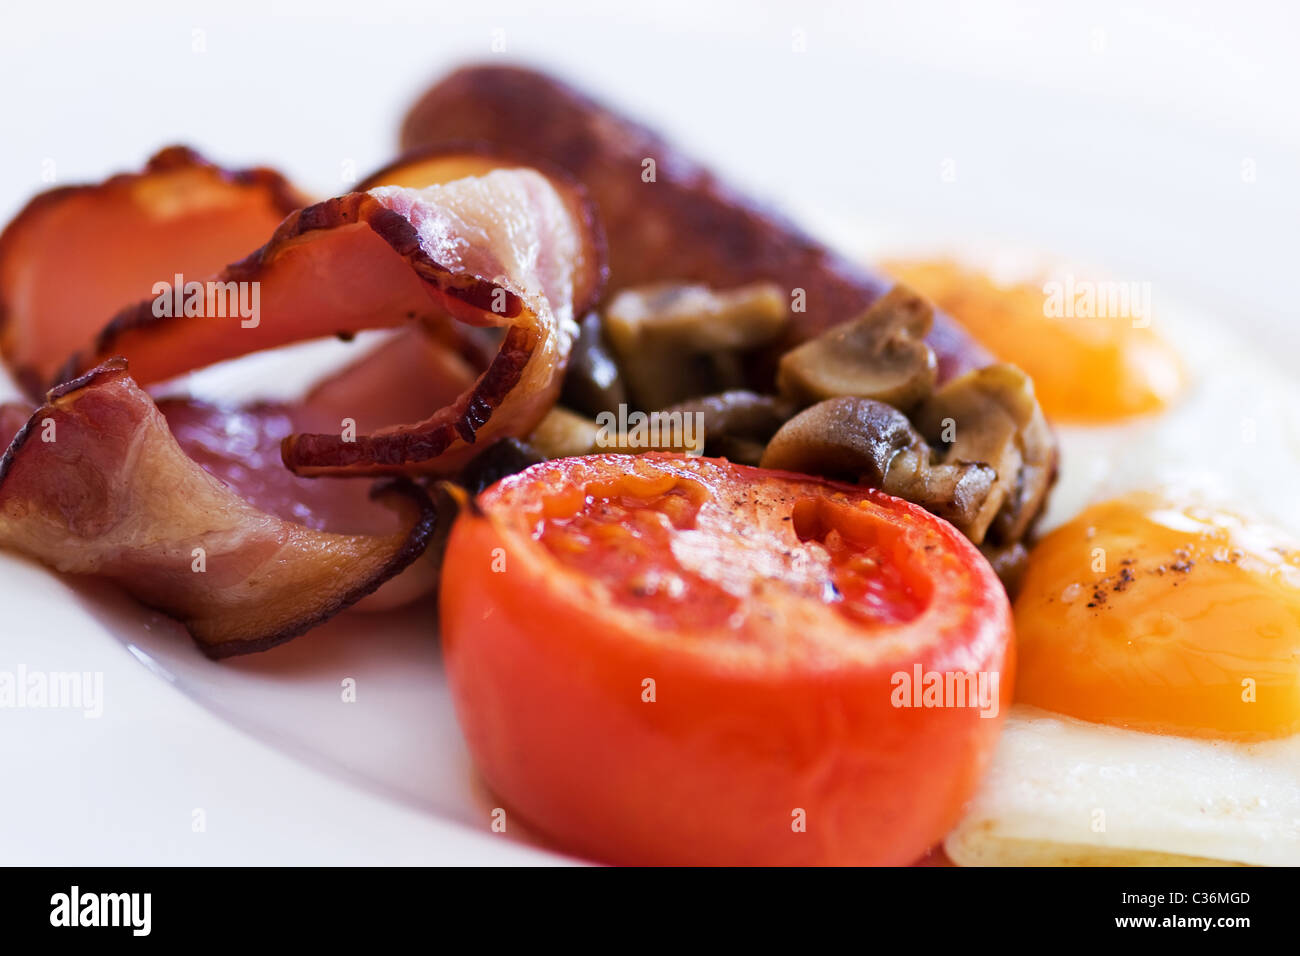 Englisches Frühstück Stockfoto